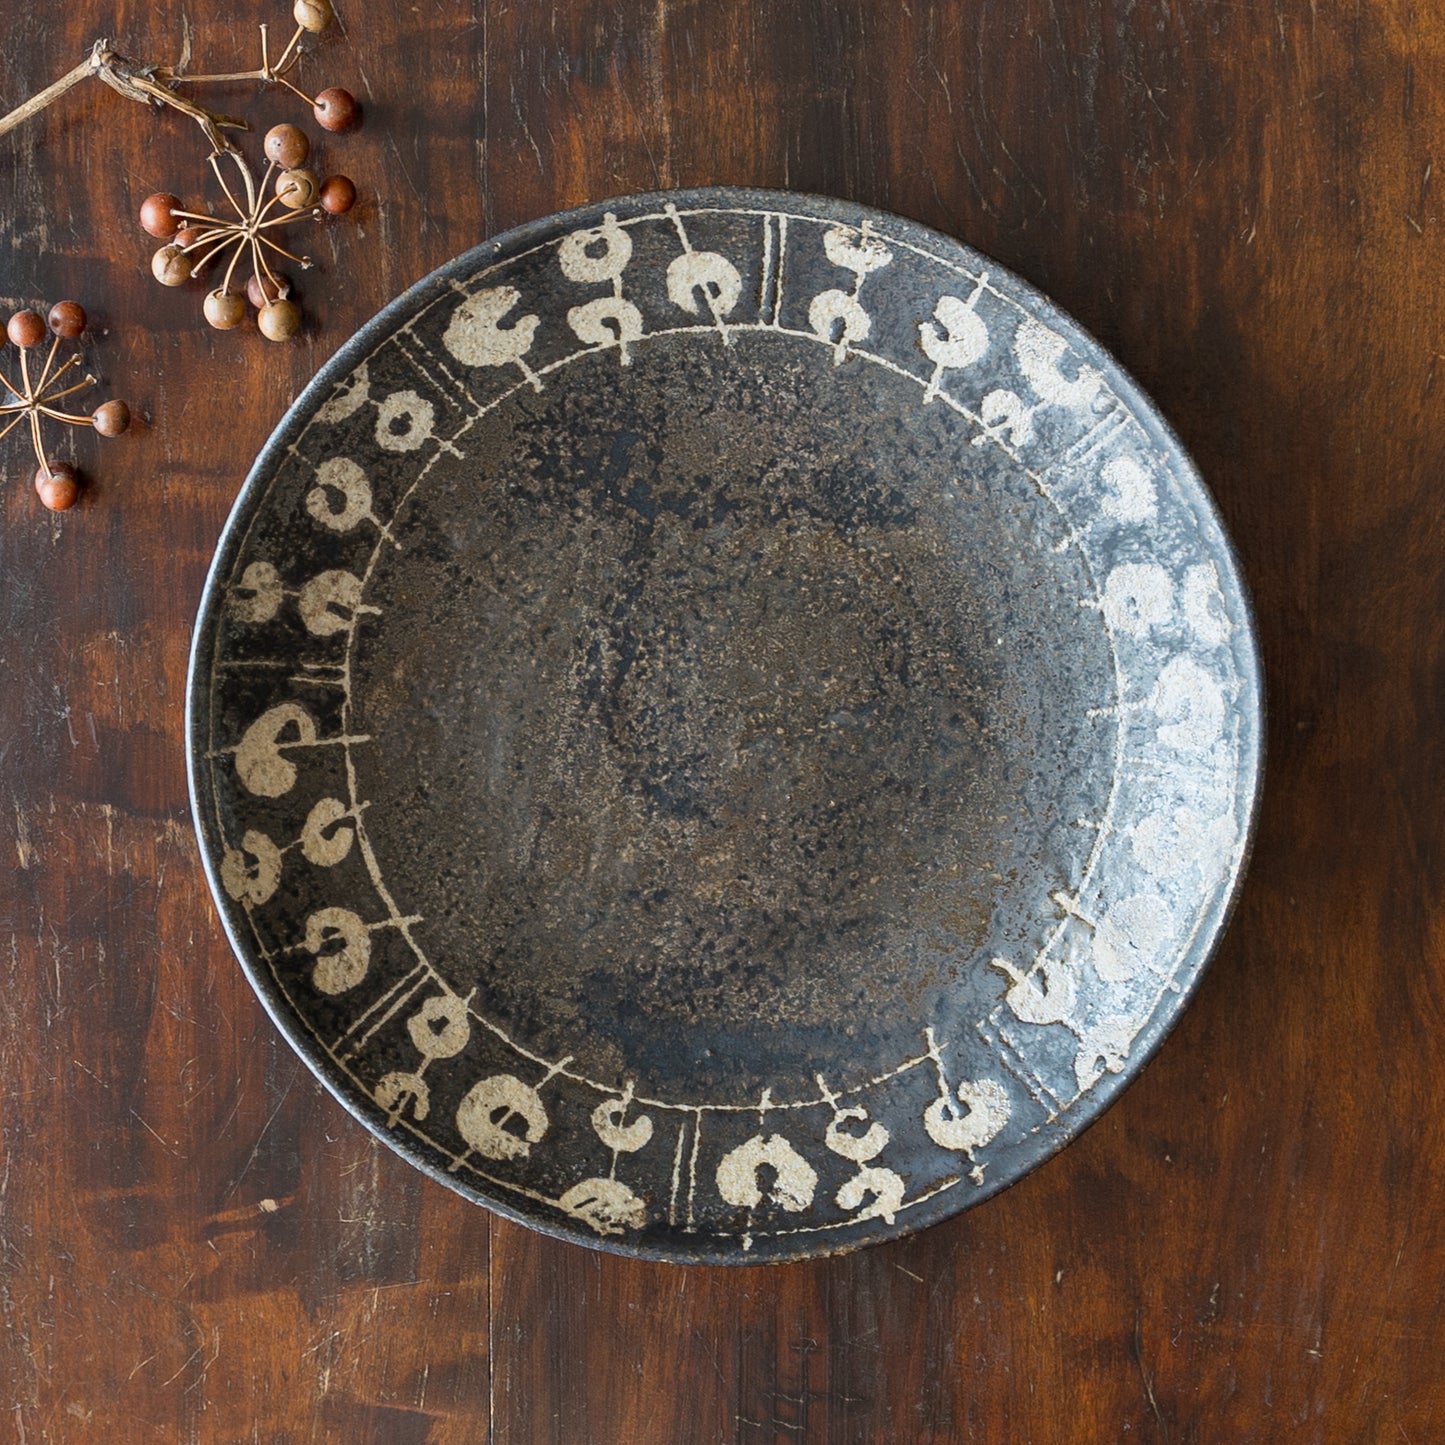 個性豊かな黒釉が美しい渡辺信史さんのロウ抜き7寸皿